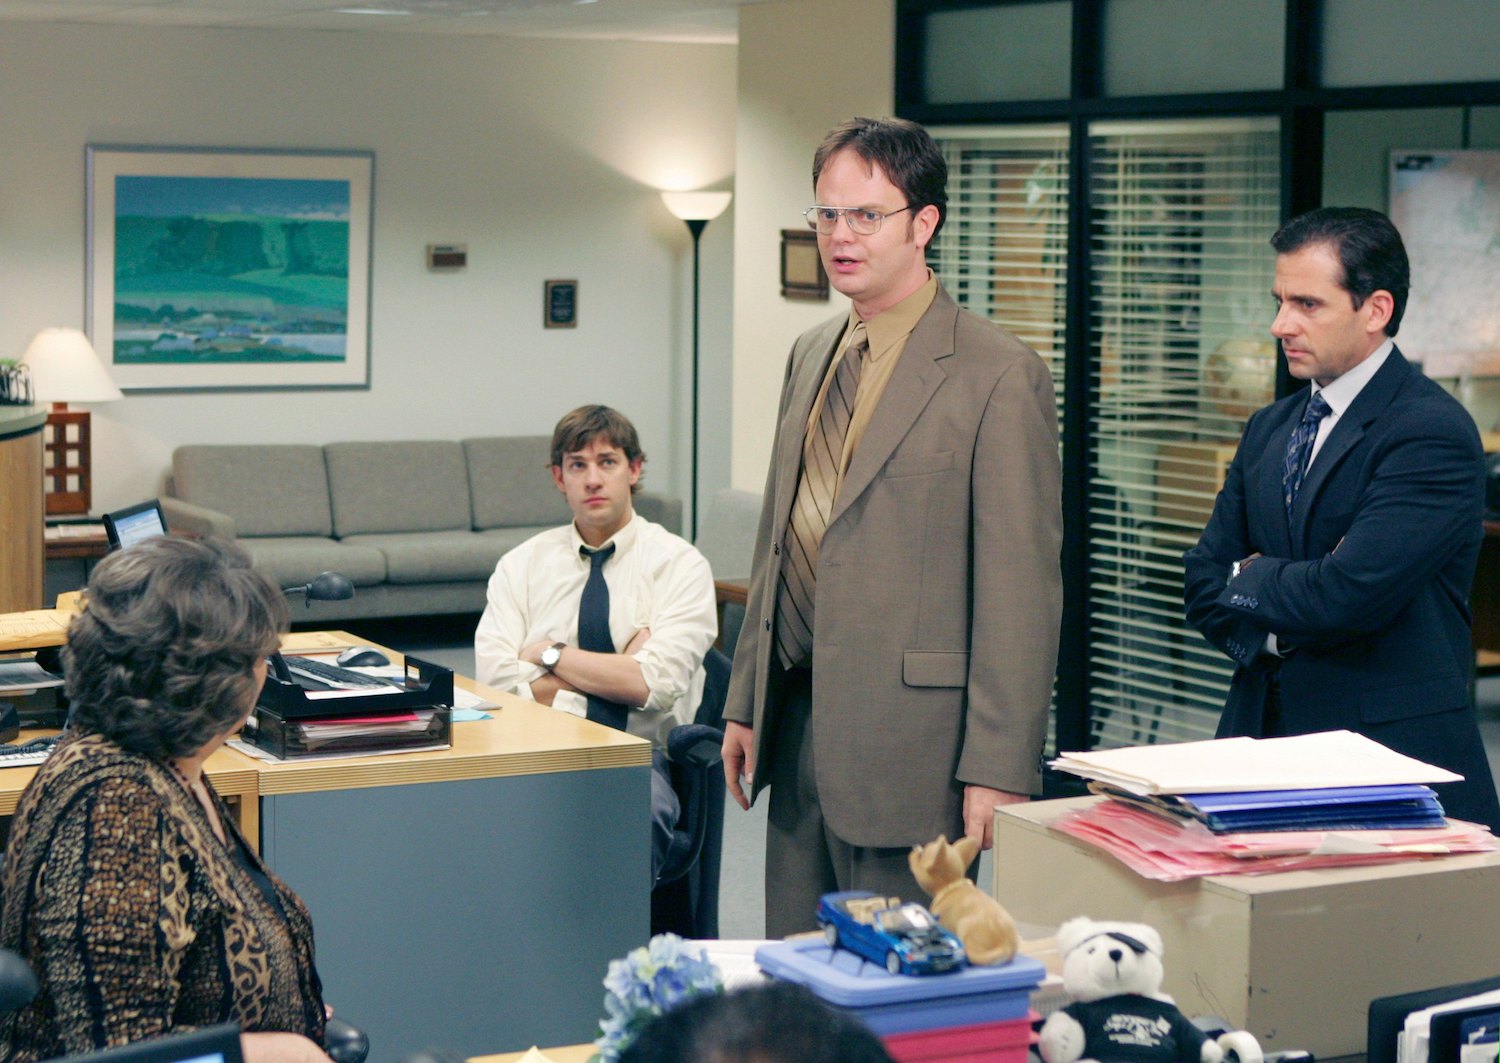 'The Office' actors in character at Dunder Mifflin. John Krasinski as Jim Halpert, Rainn Wilson as Dwight Schrute, and Steve Carell as Michael Scott.